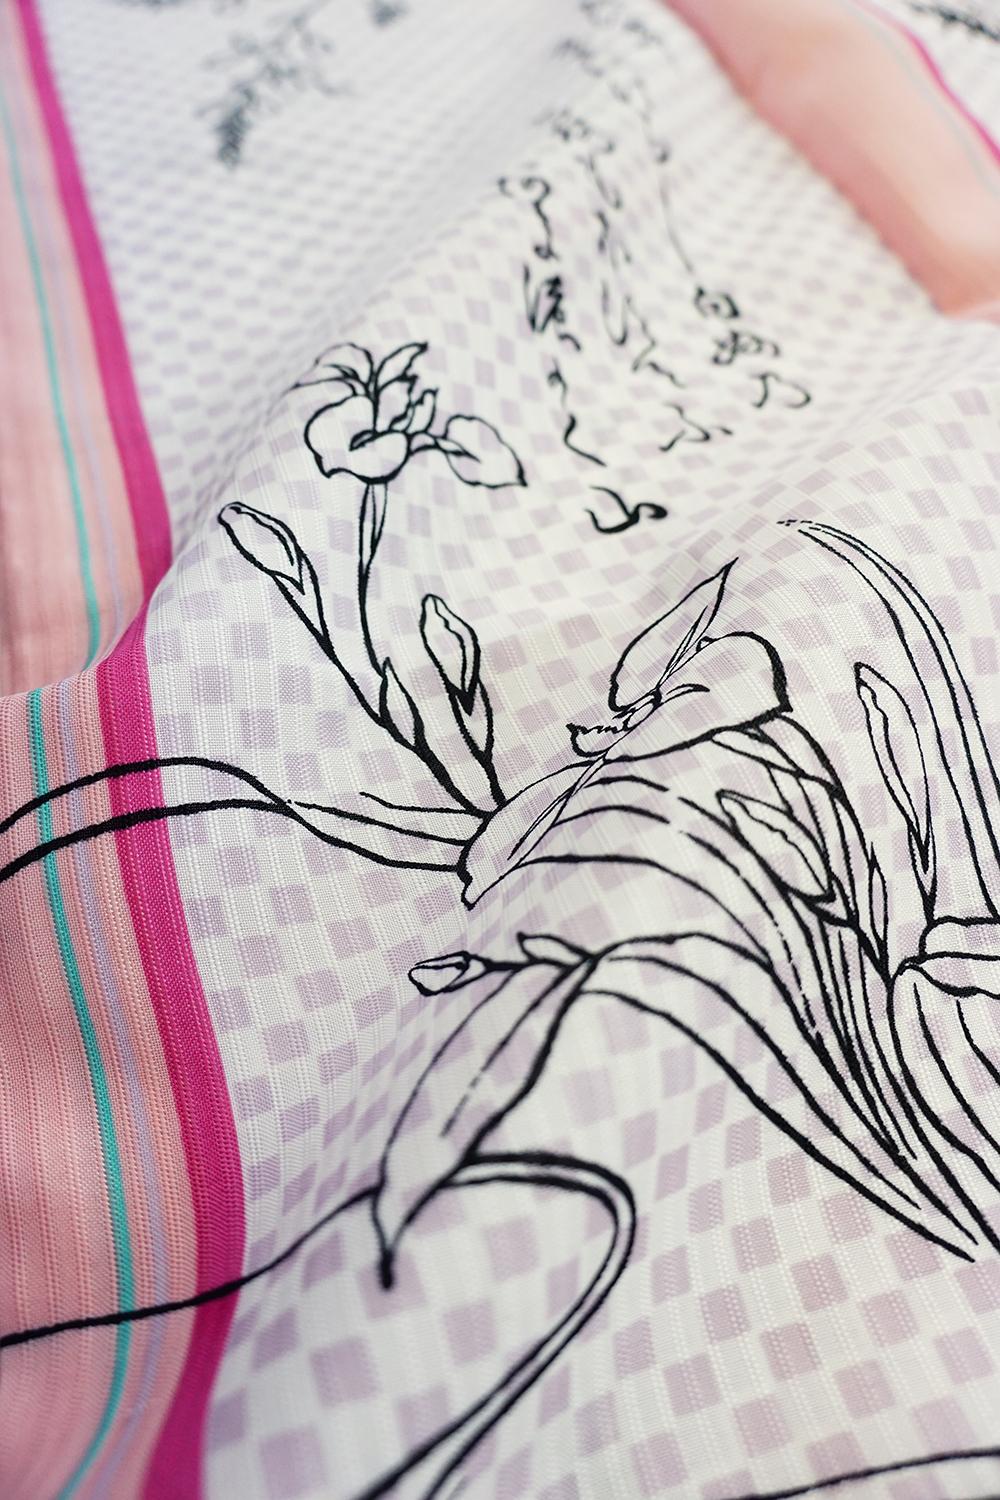 帯が選べる! (衿あり) 浴衣〈あやめ/ピンク紫〉　※浴衣単品 ¥13,200画像